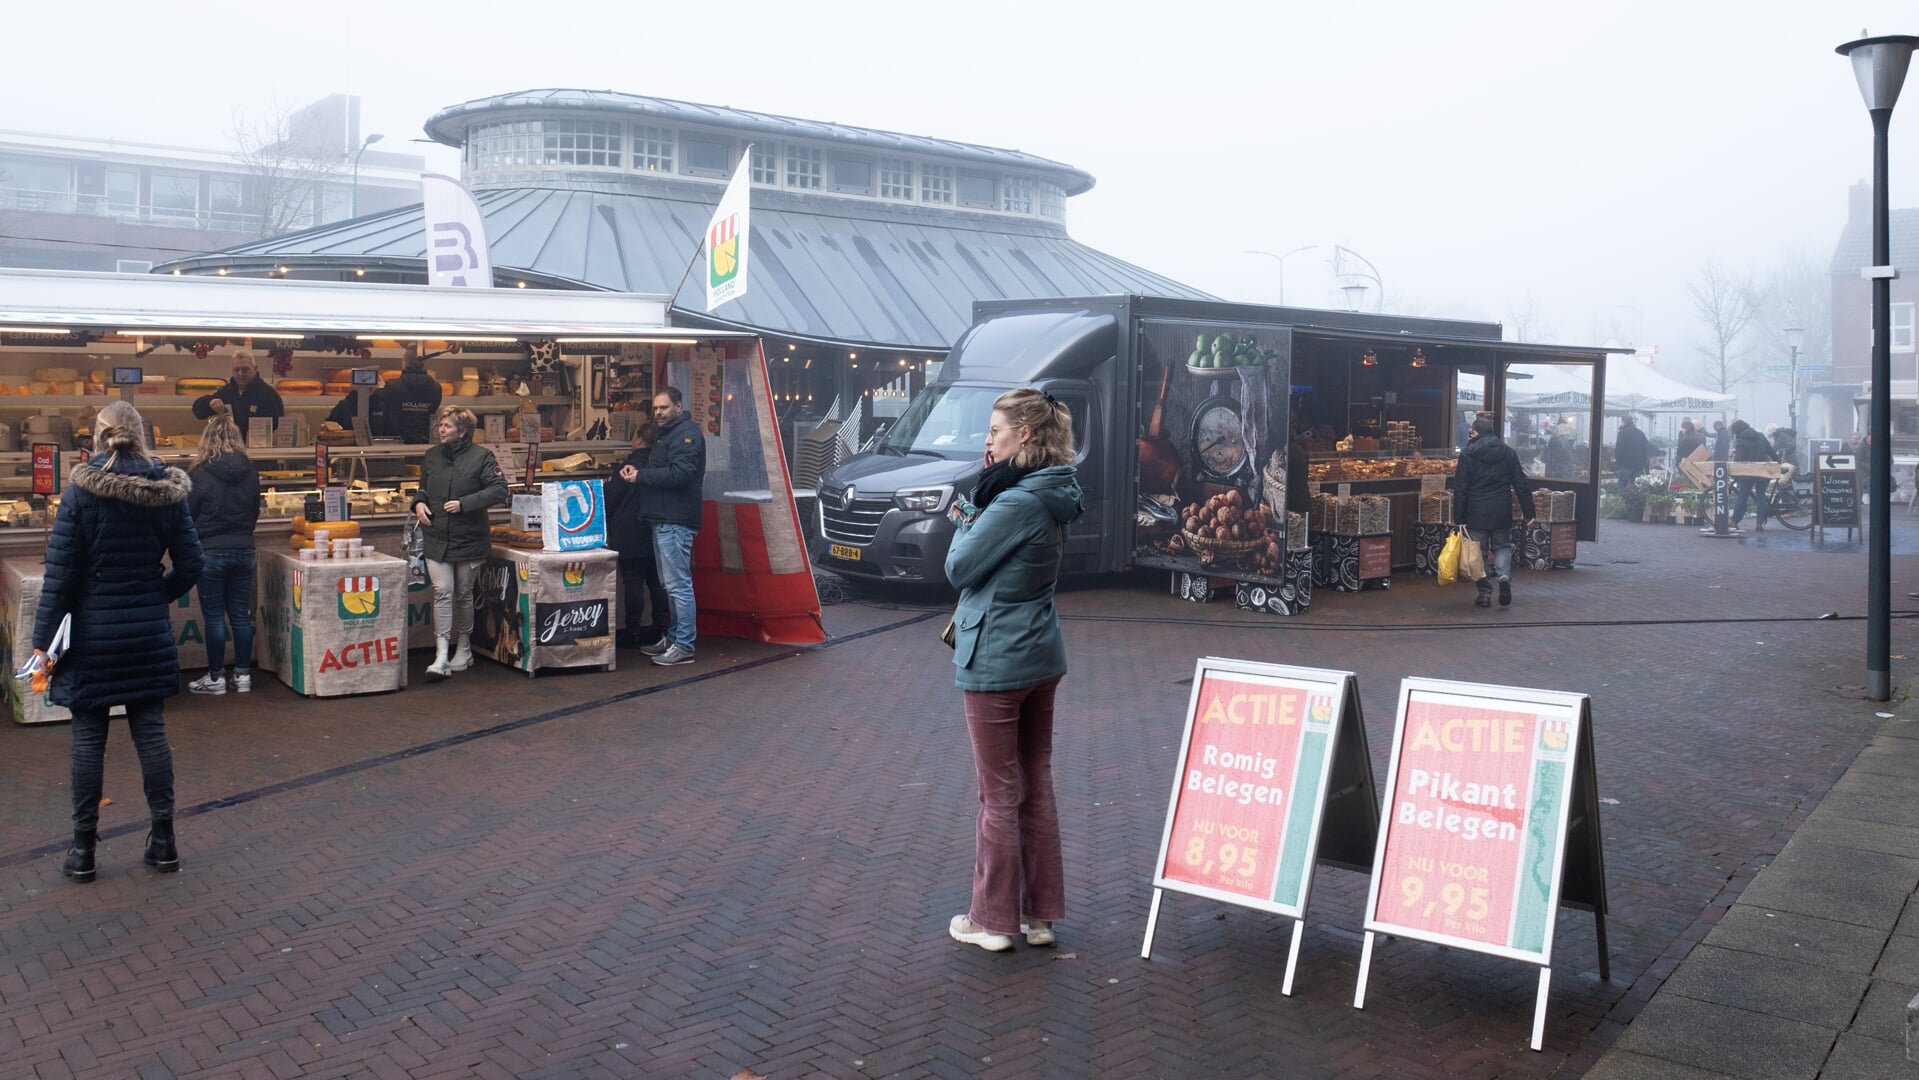 Archiefbeeld van de weekmarkt op het Poortplein. Er zijn zorgen over de veiligheid van marktkooplieden en bezoekers.